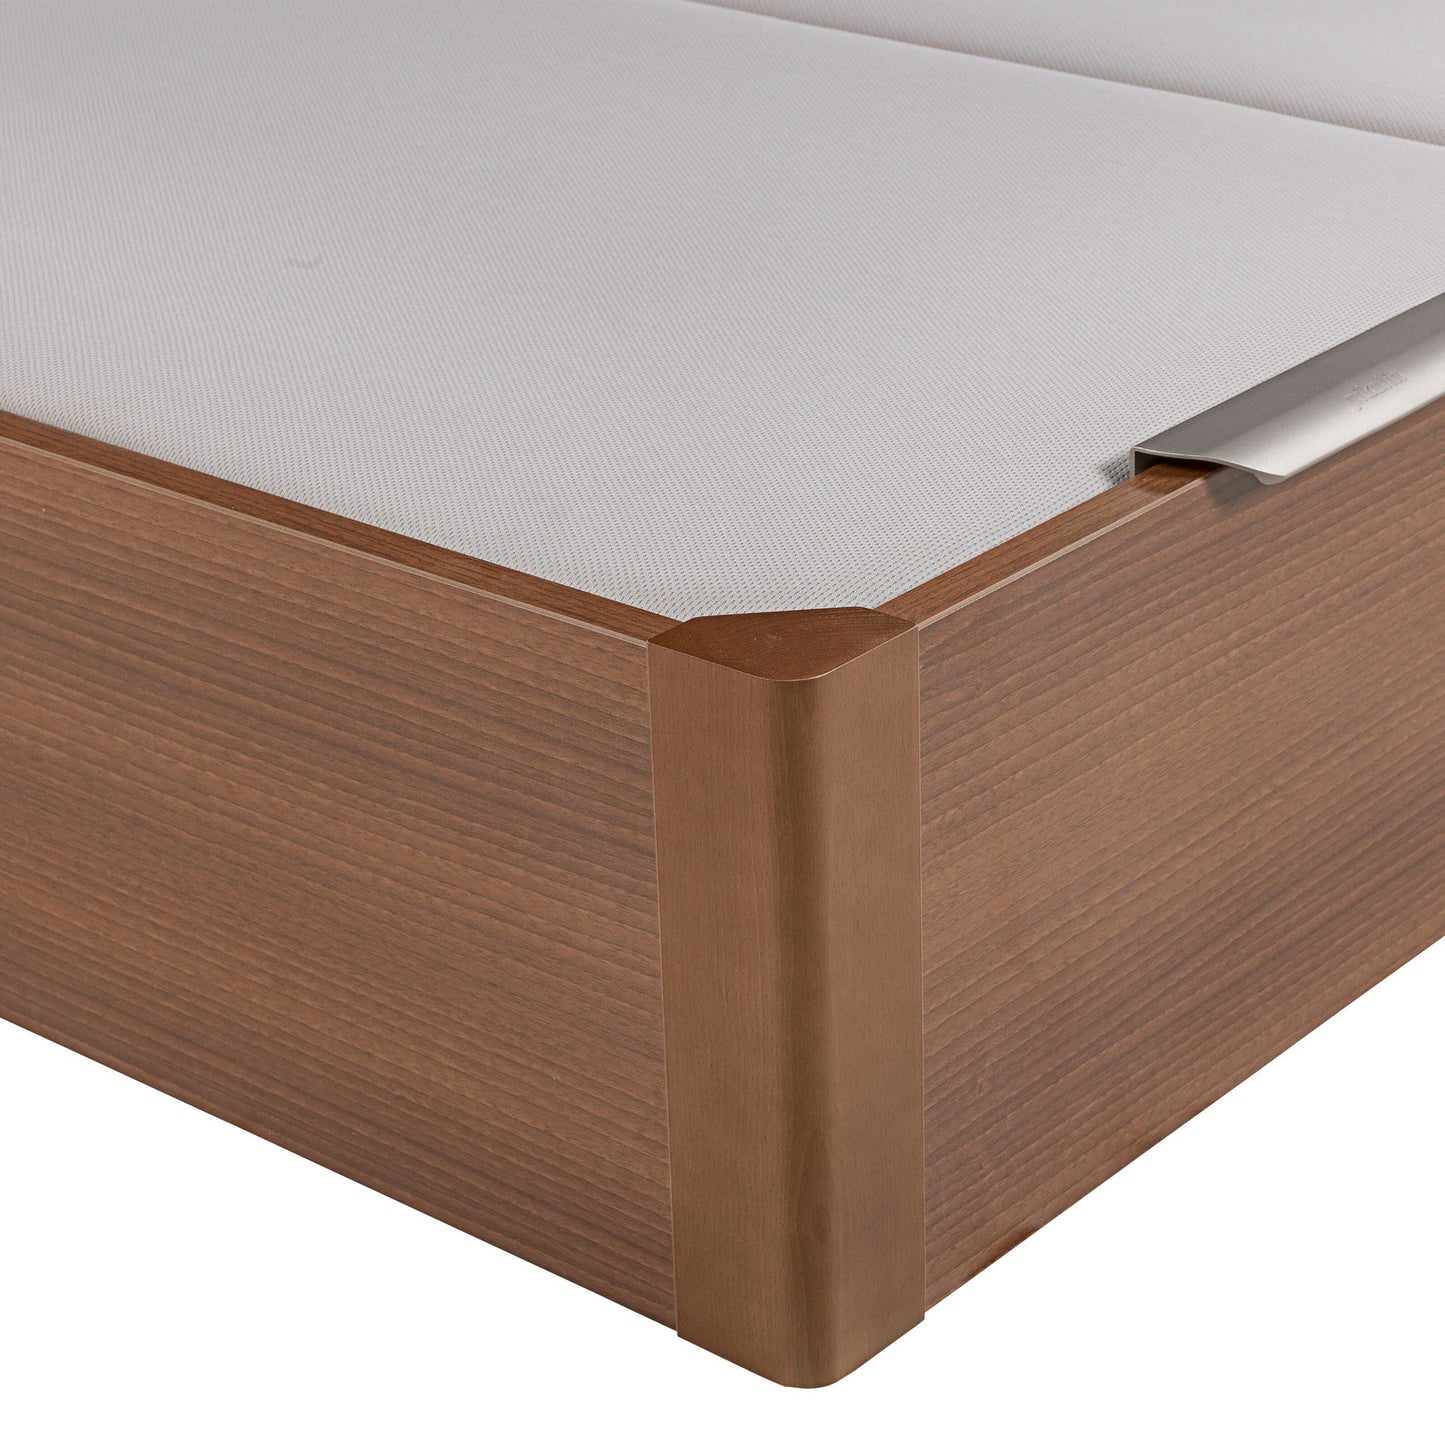 Canapé abatible de madera de tapa doble de color cerezo - DESIGN - 150x182